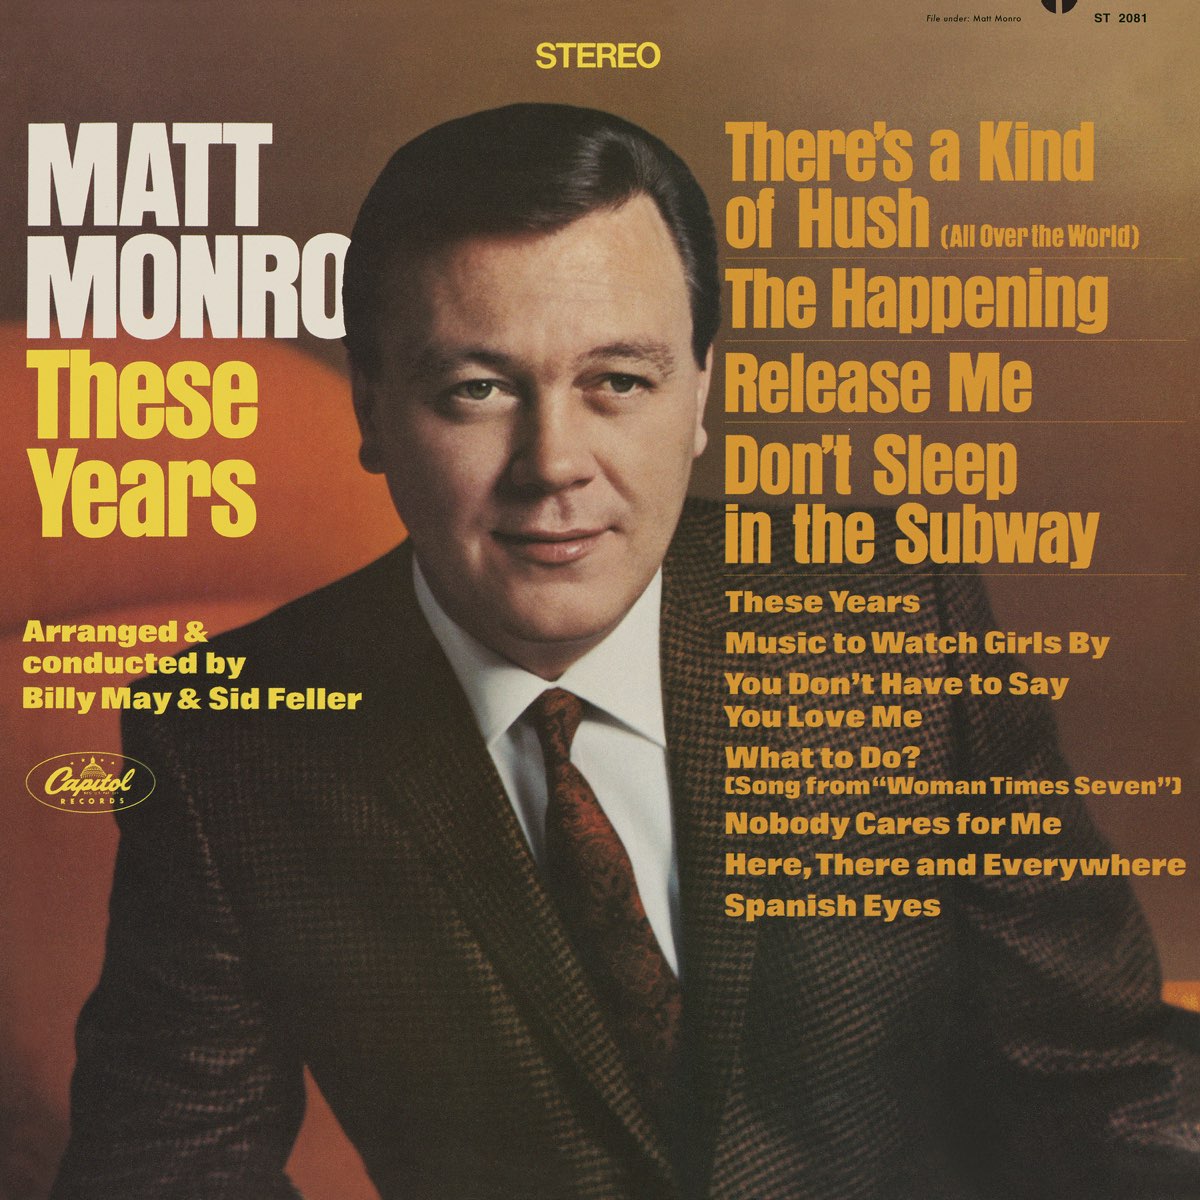 ‎These Years (Remastered 2021) - Album by Matt Monro - Apple Music